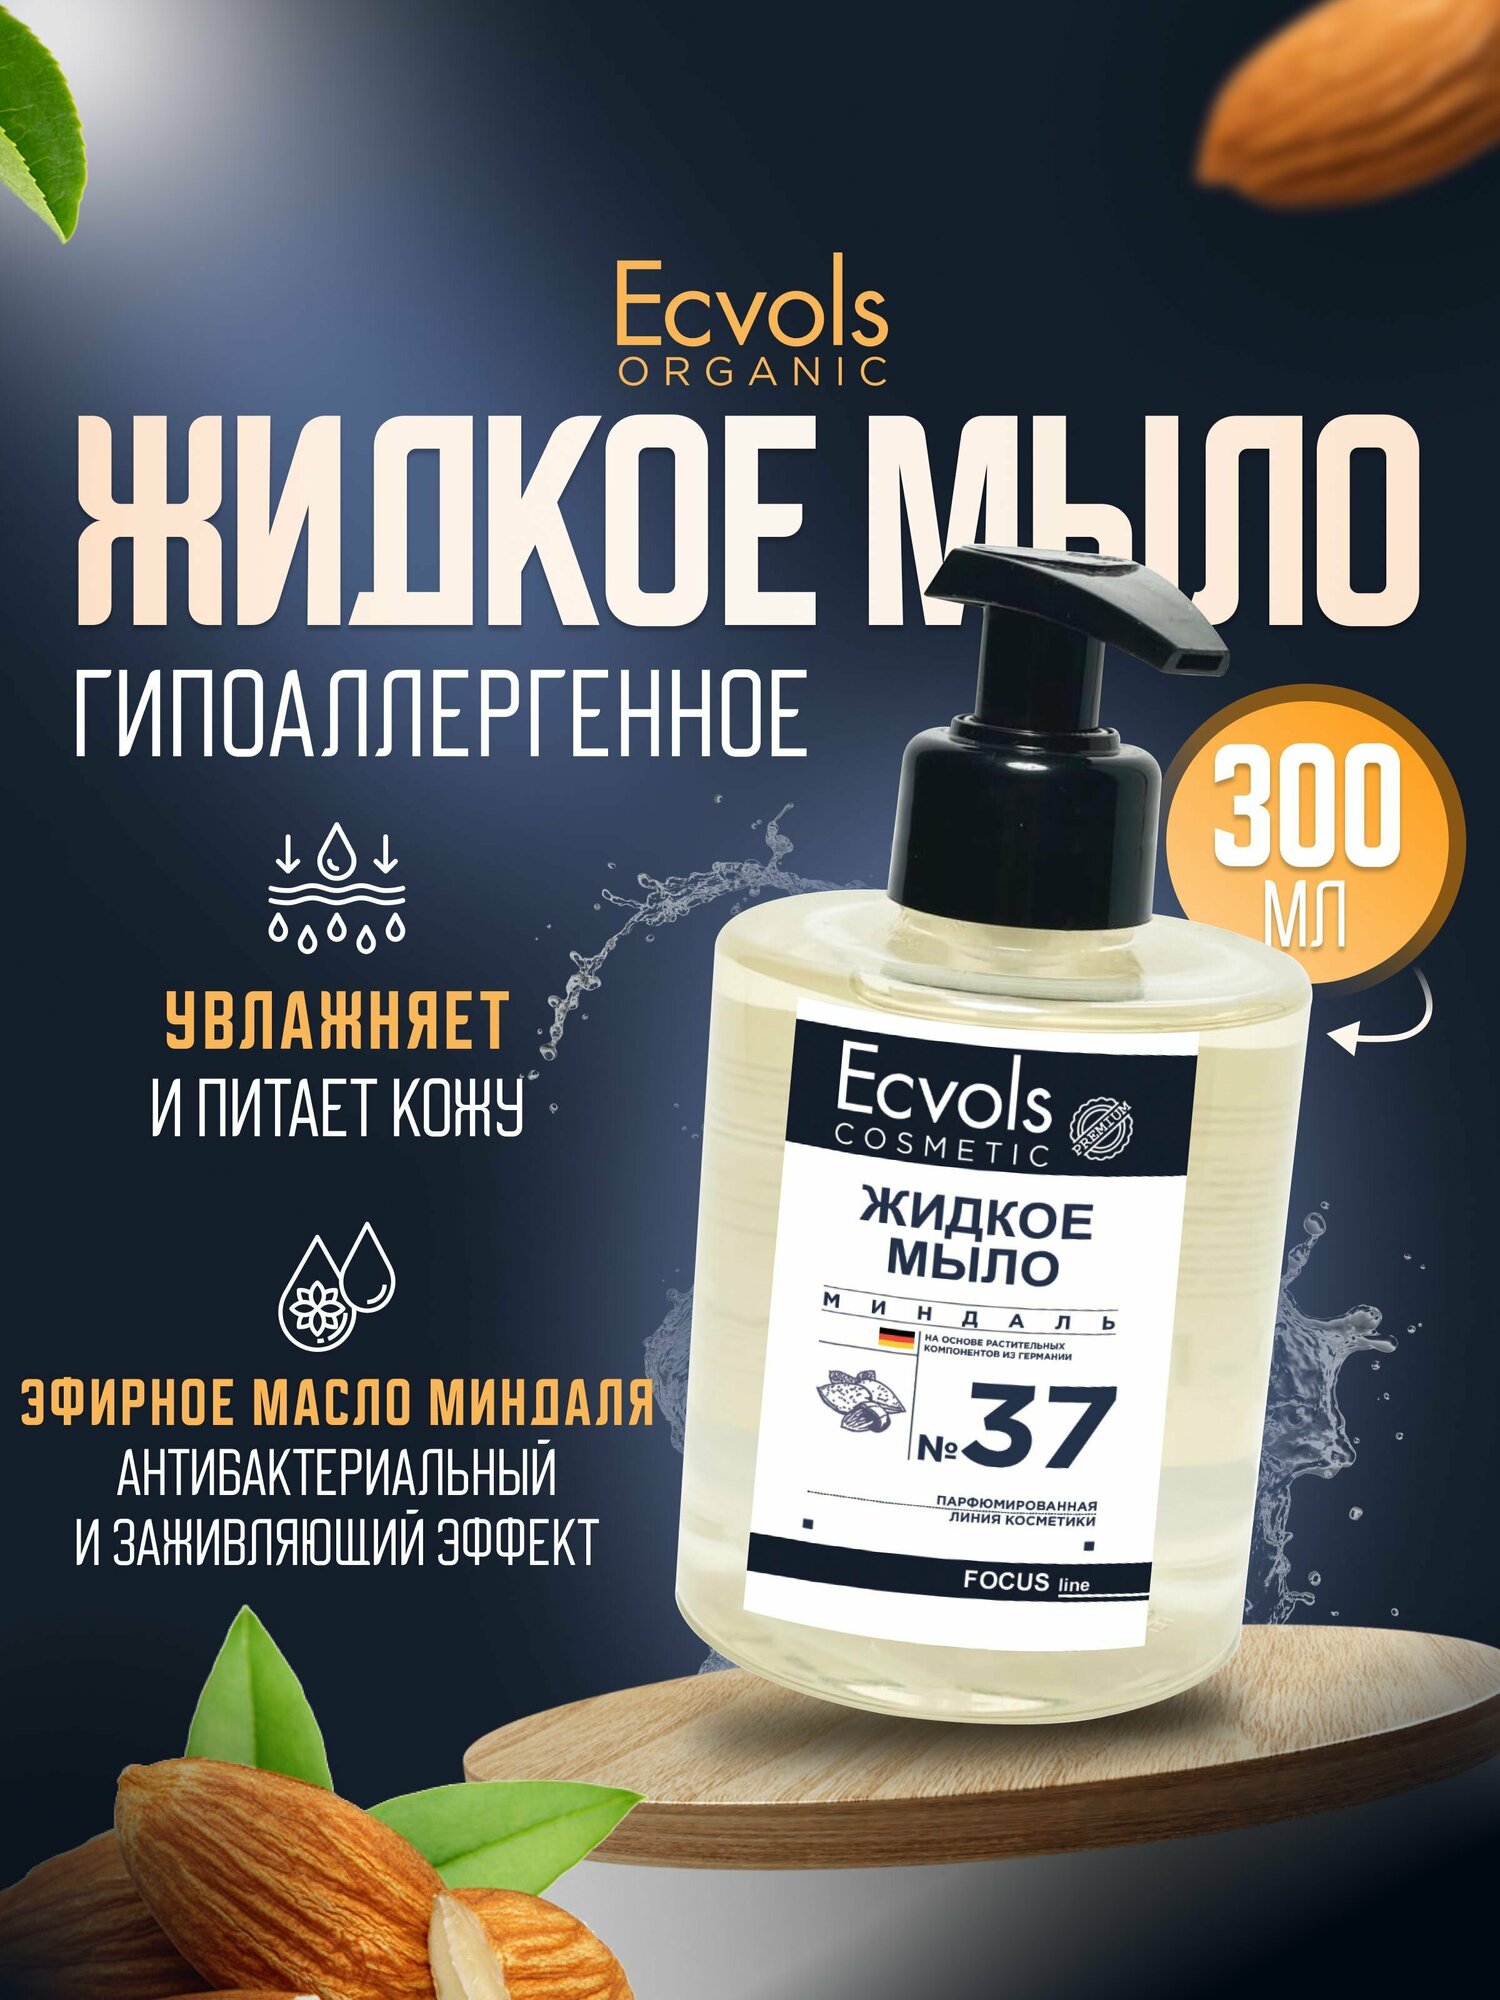 Жидкое мыло для рук и тела Ecvols Organic "Миндаль" увлажняющее, натуральное, с дозатором, 300 мл